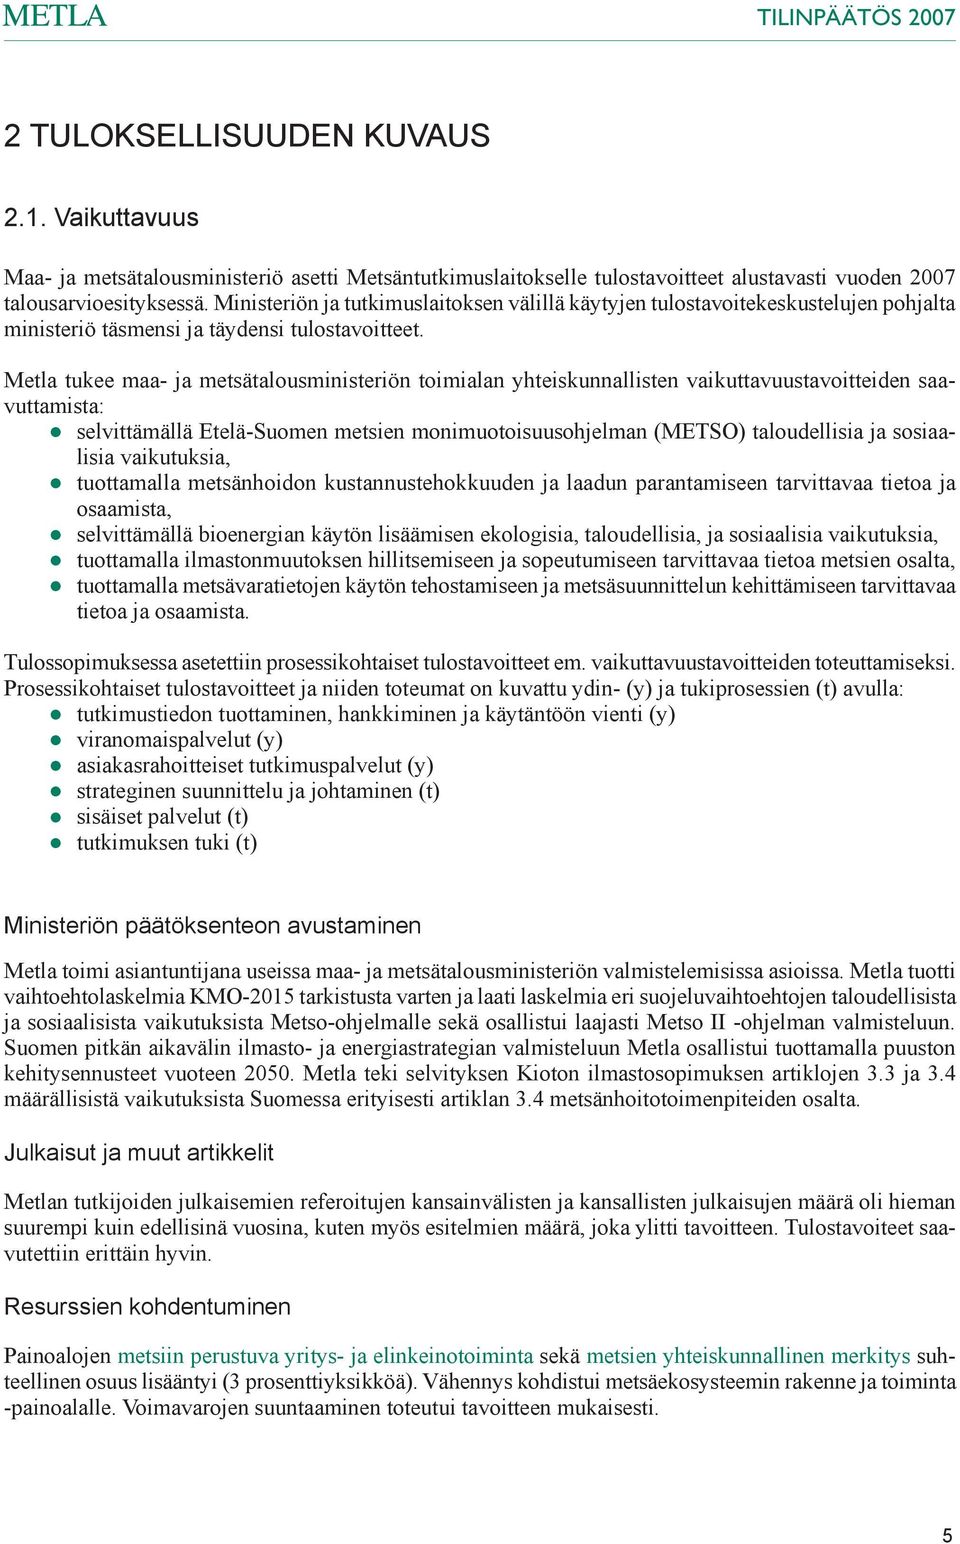 Metla tukee maa- ja metsätalousministeriön toimialan yhteiskunnallisten vaikuttavuustavoitteiden saavuttamista: selvittämällä Etelä-Suomen metsien monimuotoisuusohjelman (METSO) taloudellisia ja